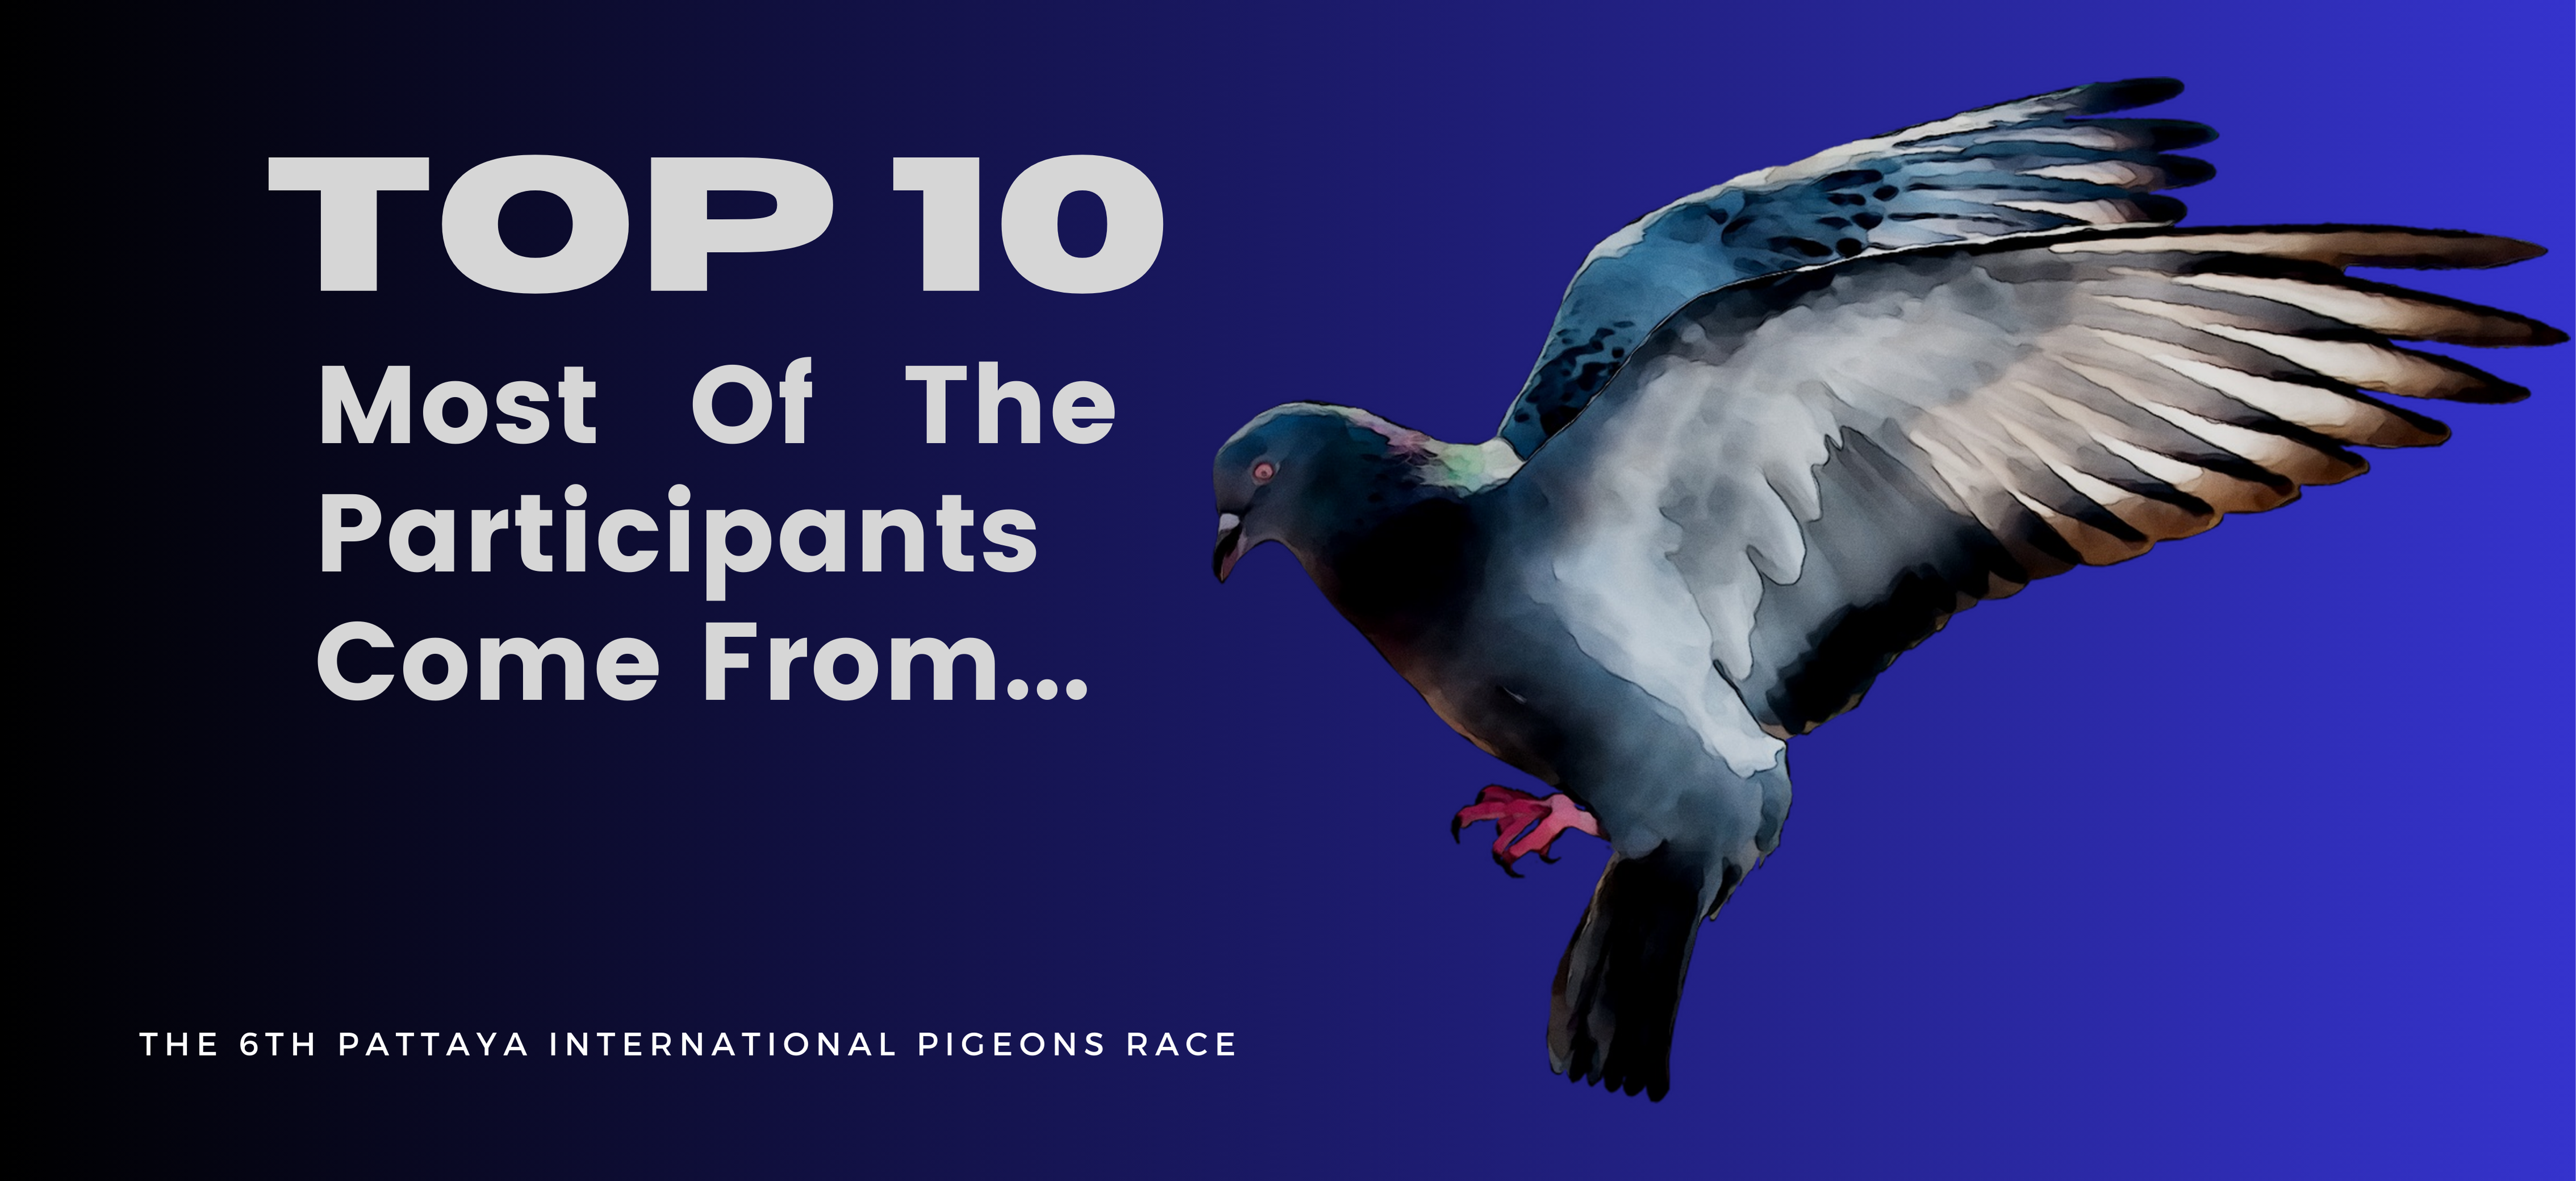 10 อันดับที่ส่งนกเข้ามาร่วมการแข่งขันมากที่สุดในปีนี้